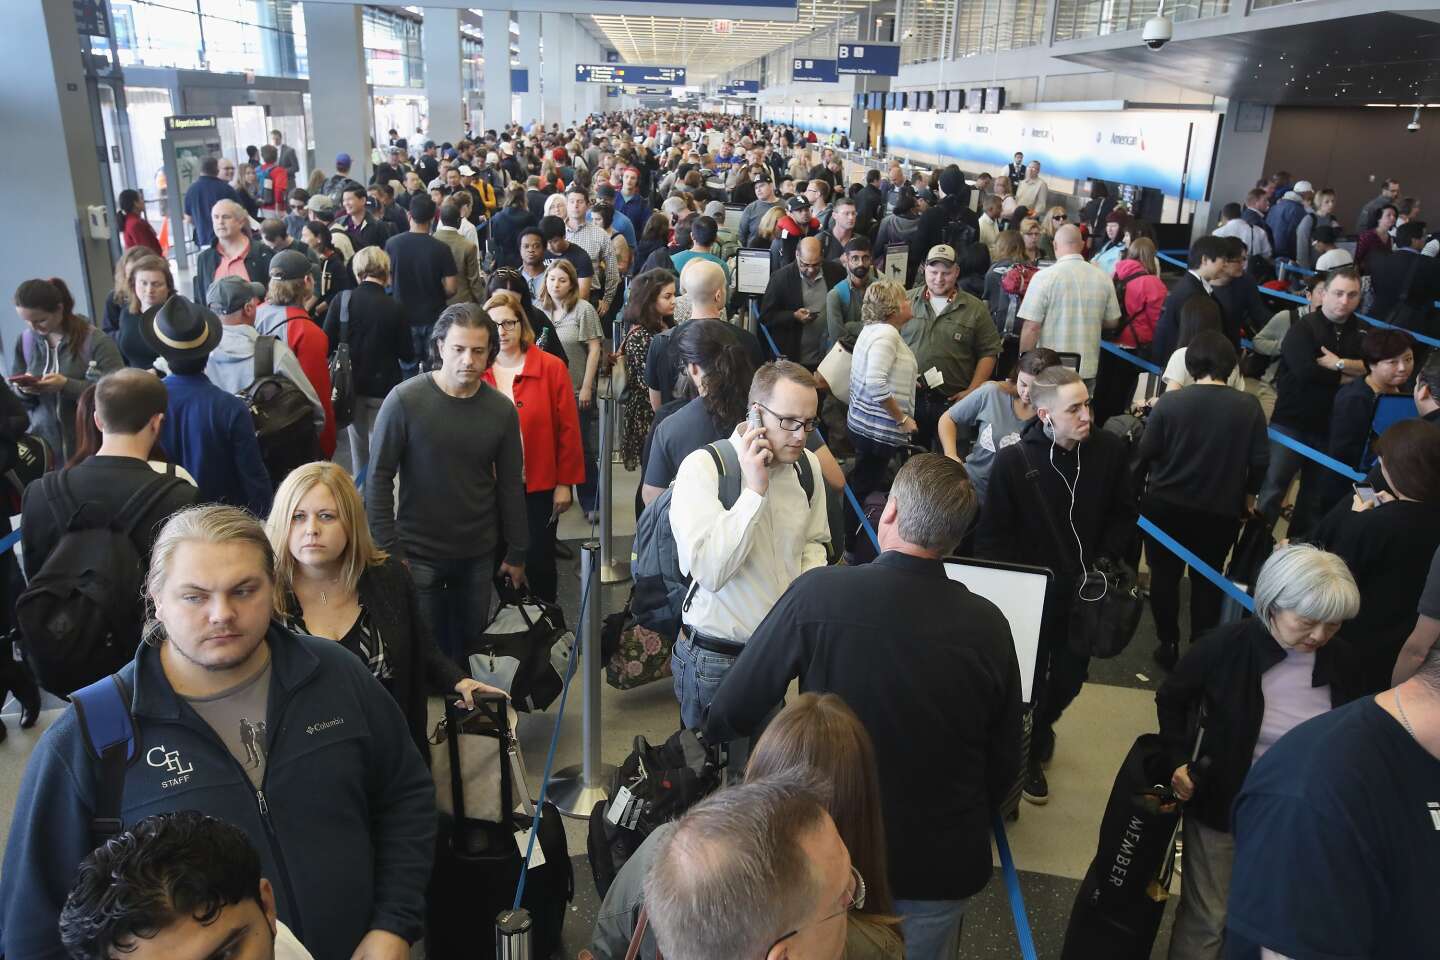 L’enfer des contrôles de sécurité dans les aéroports aux Etats-Unis